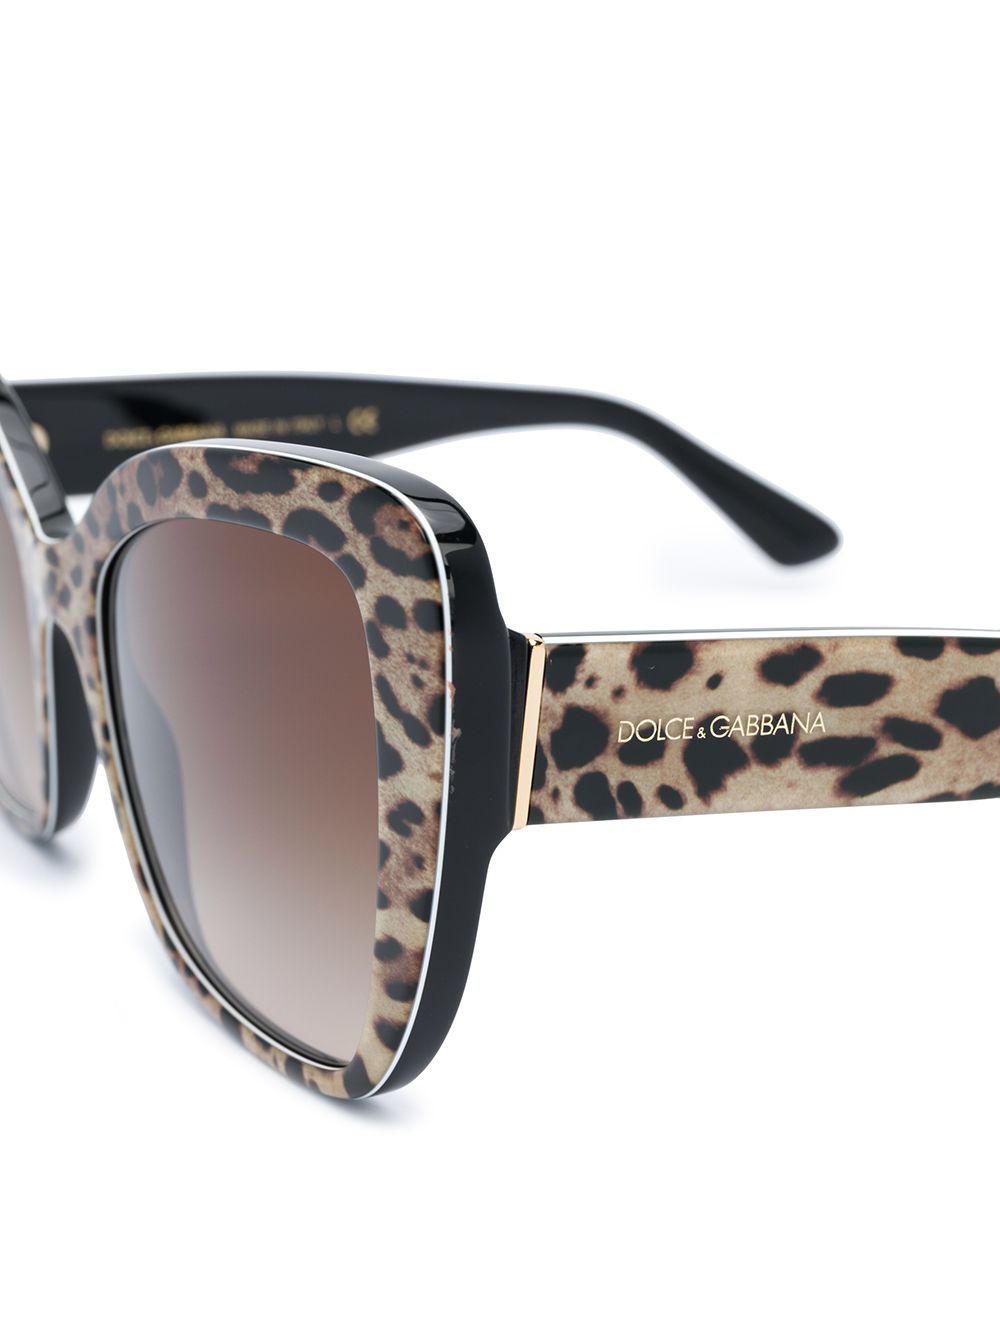 фото Dolce & gabbana eyewear солнцезащитные очки с леопардовым принтом